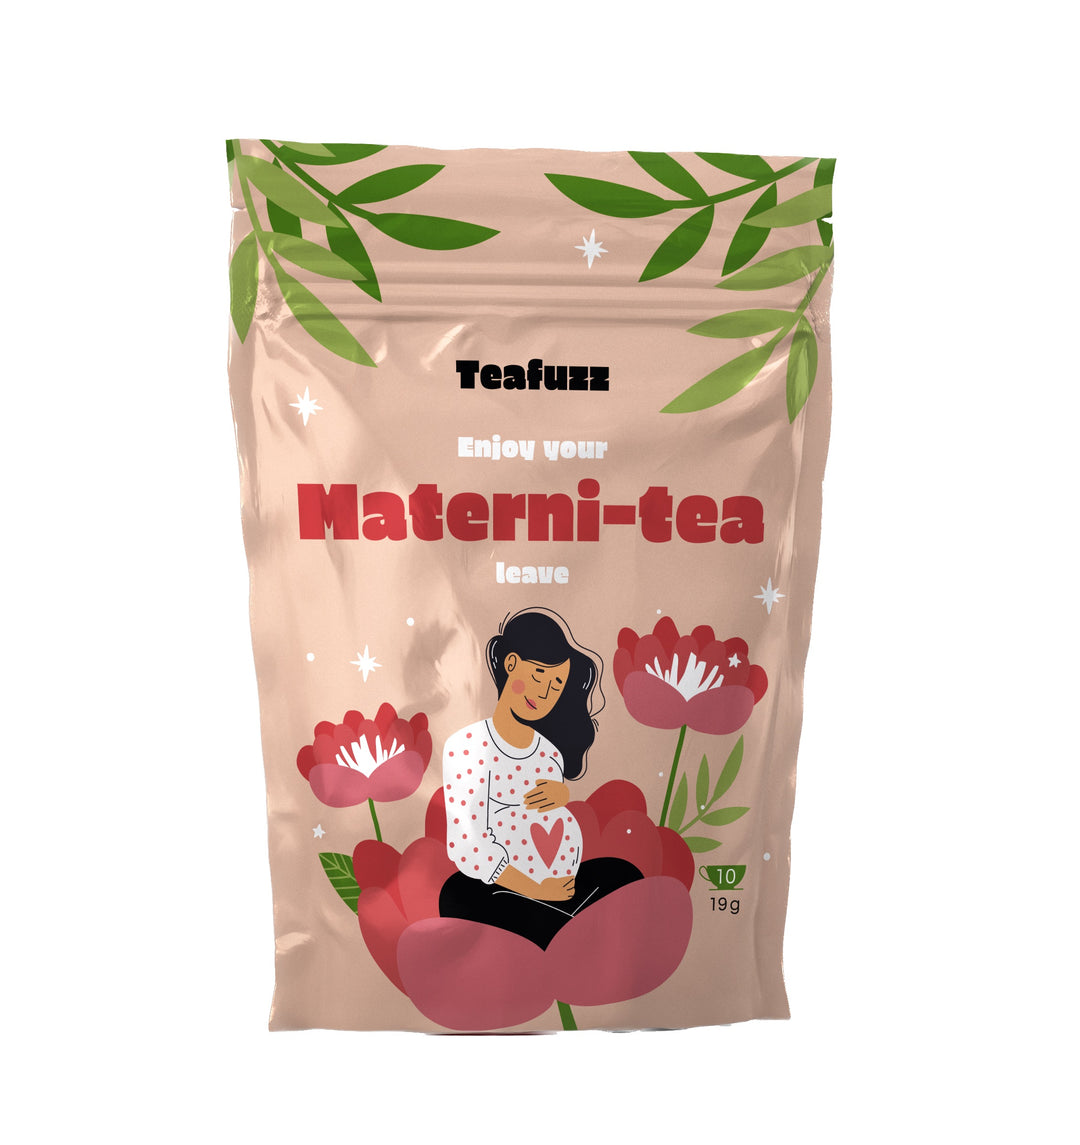 Materni-tea